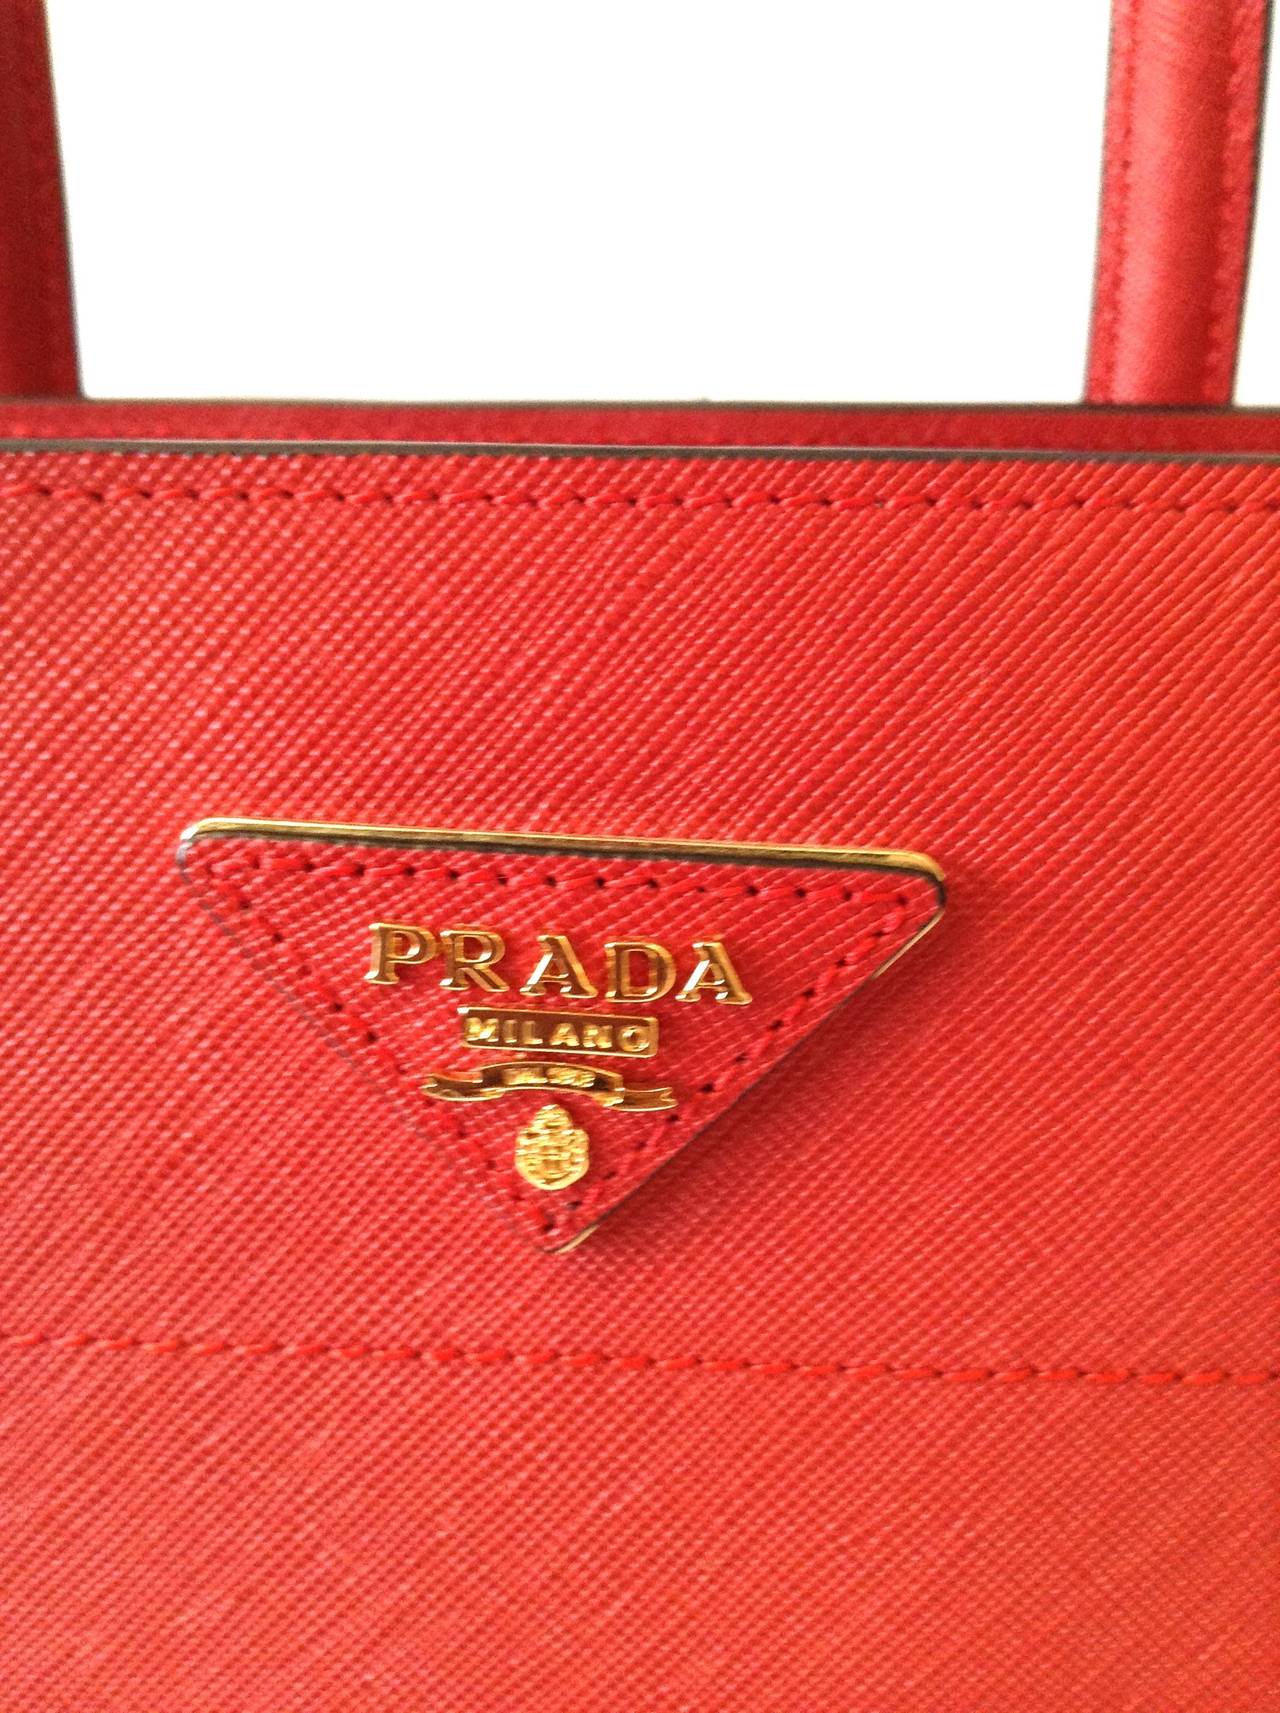 2013 PRADA Saffiano Trapeze tote bag in Lipstick Red GHW $1800 For Sale 2